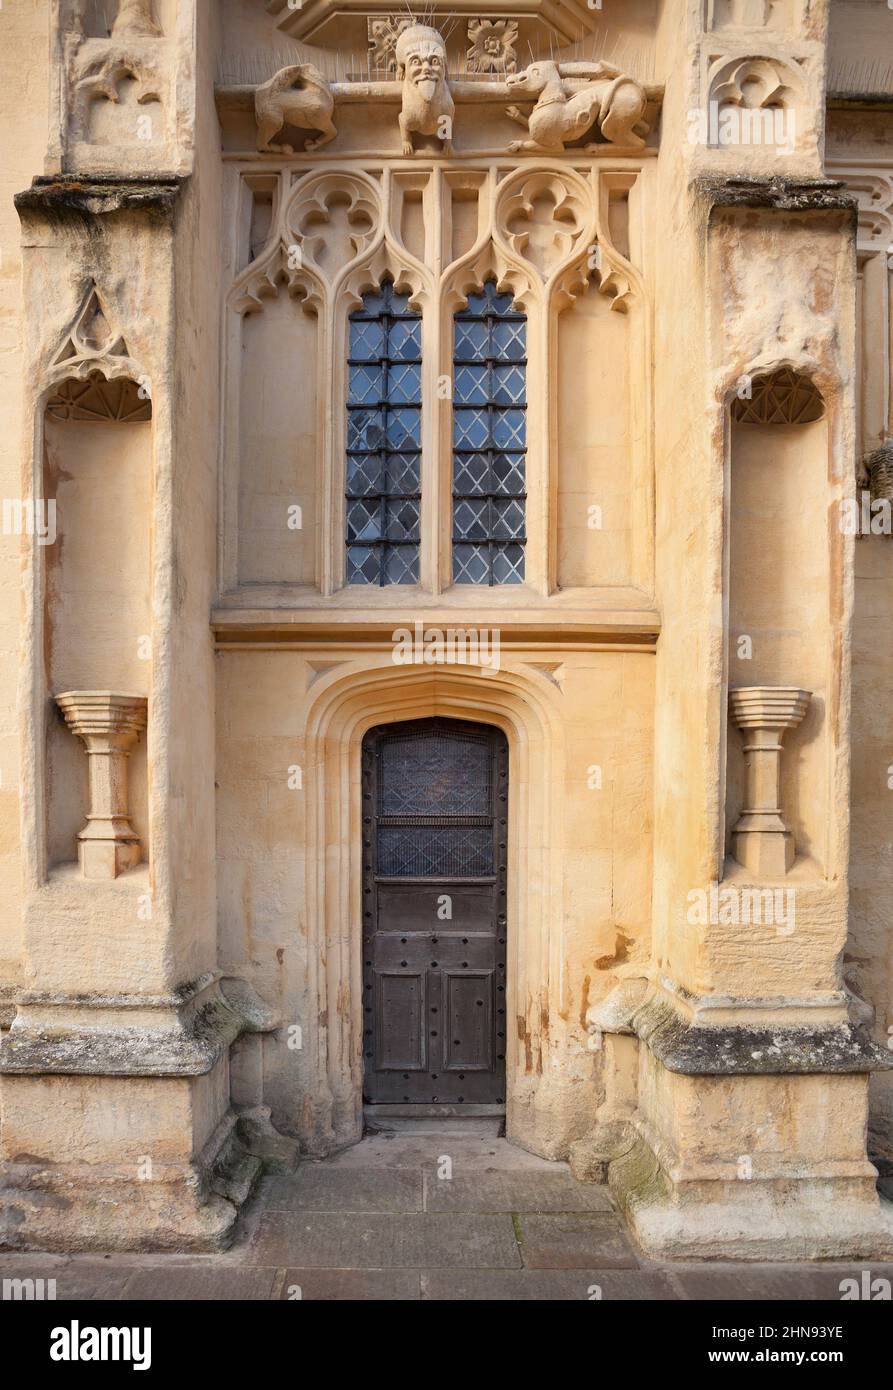 St. John Baptist, Pfarrkirche, Cirencester, Cotswolds, äußeres architektonisches Detail, Mittelalterlicher Eingang Stockfoto